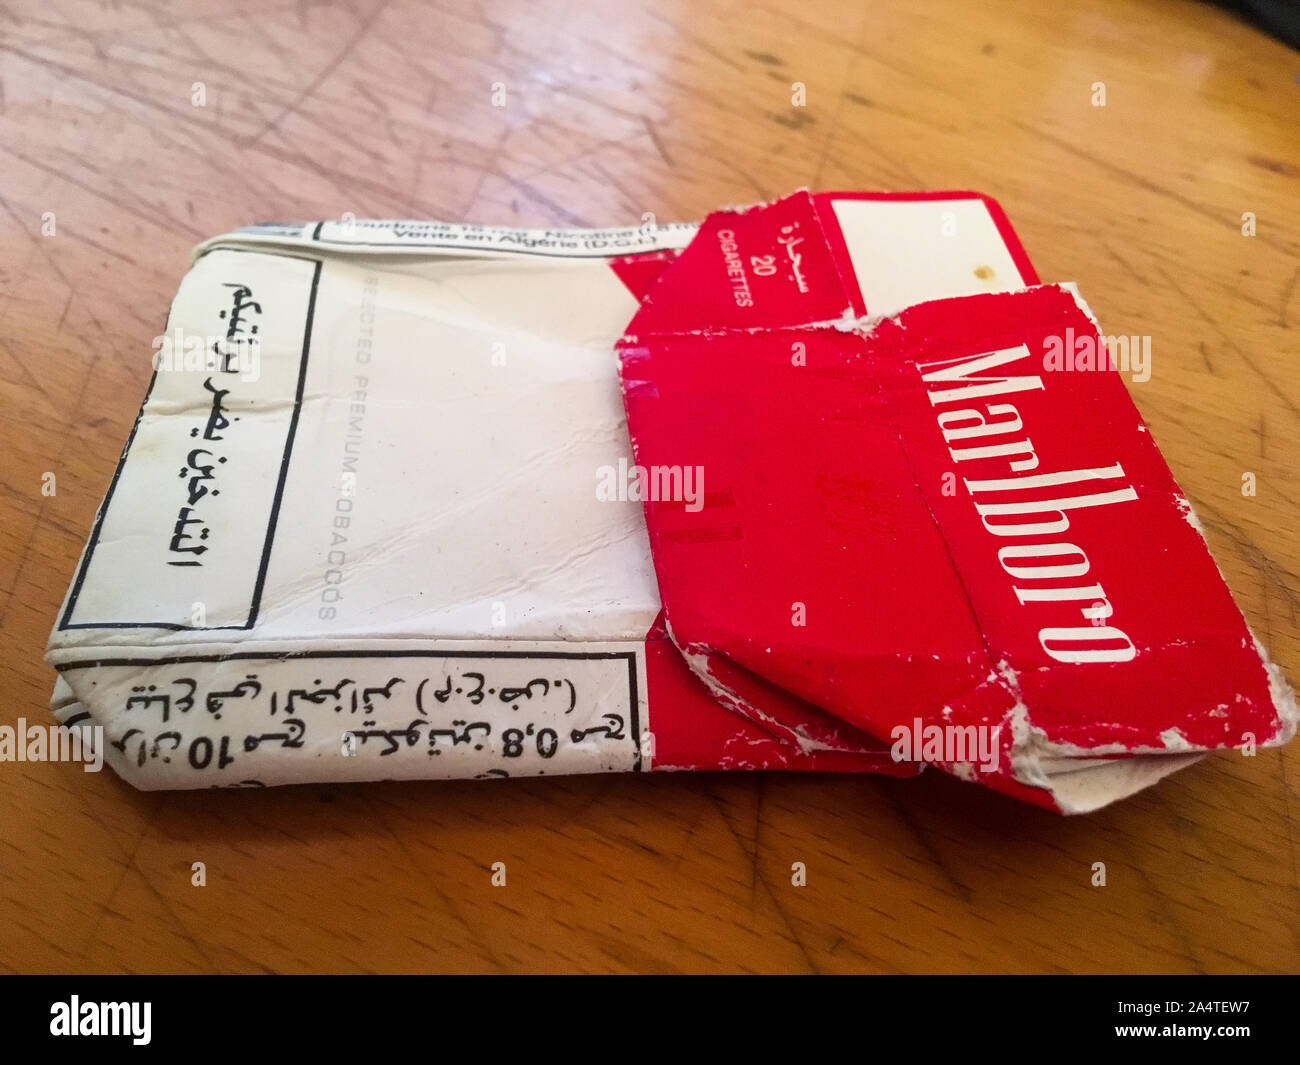 Eine Packung Marlboro Red Zigaretten Stockfotografie - Alamy